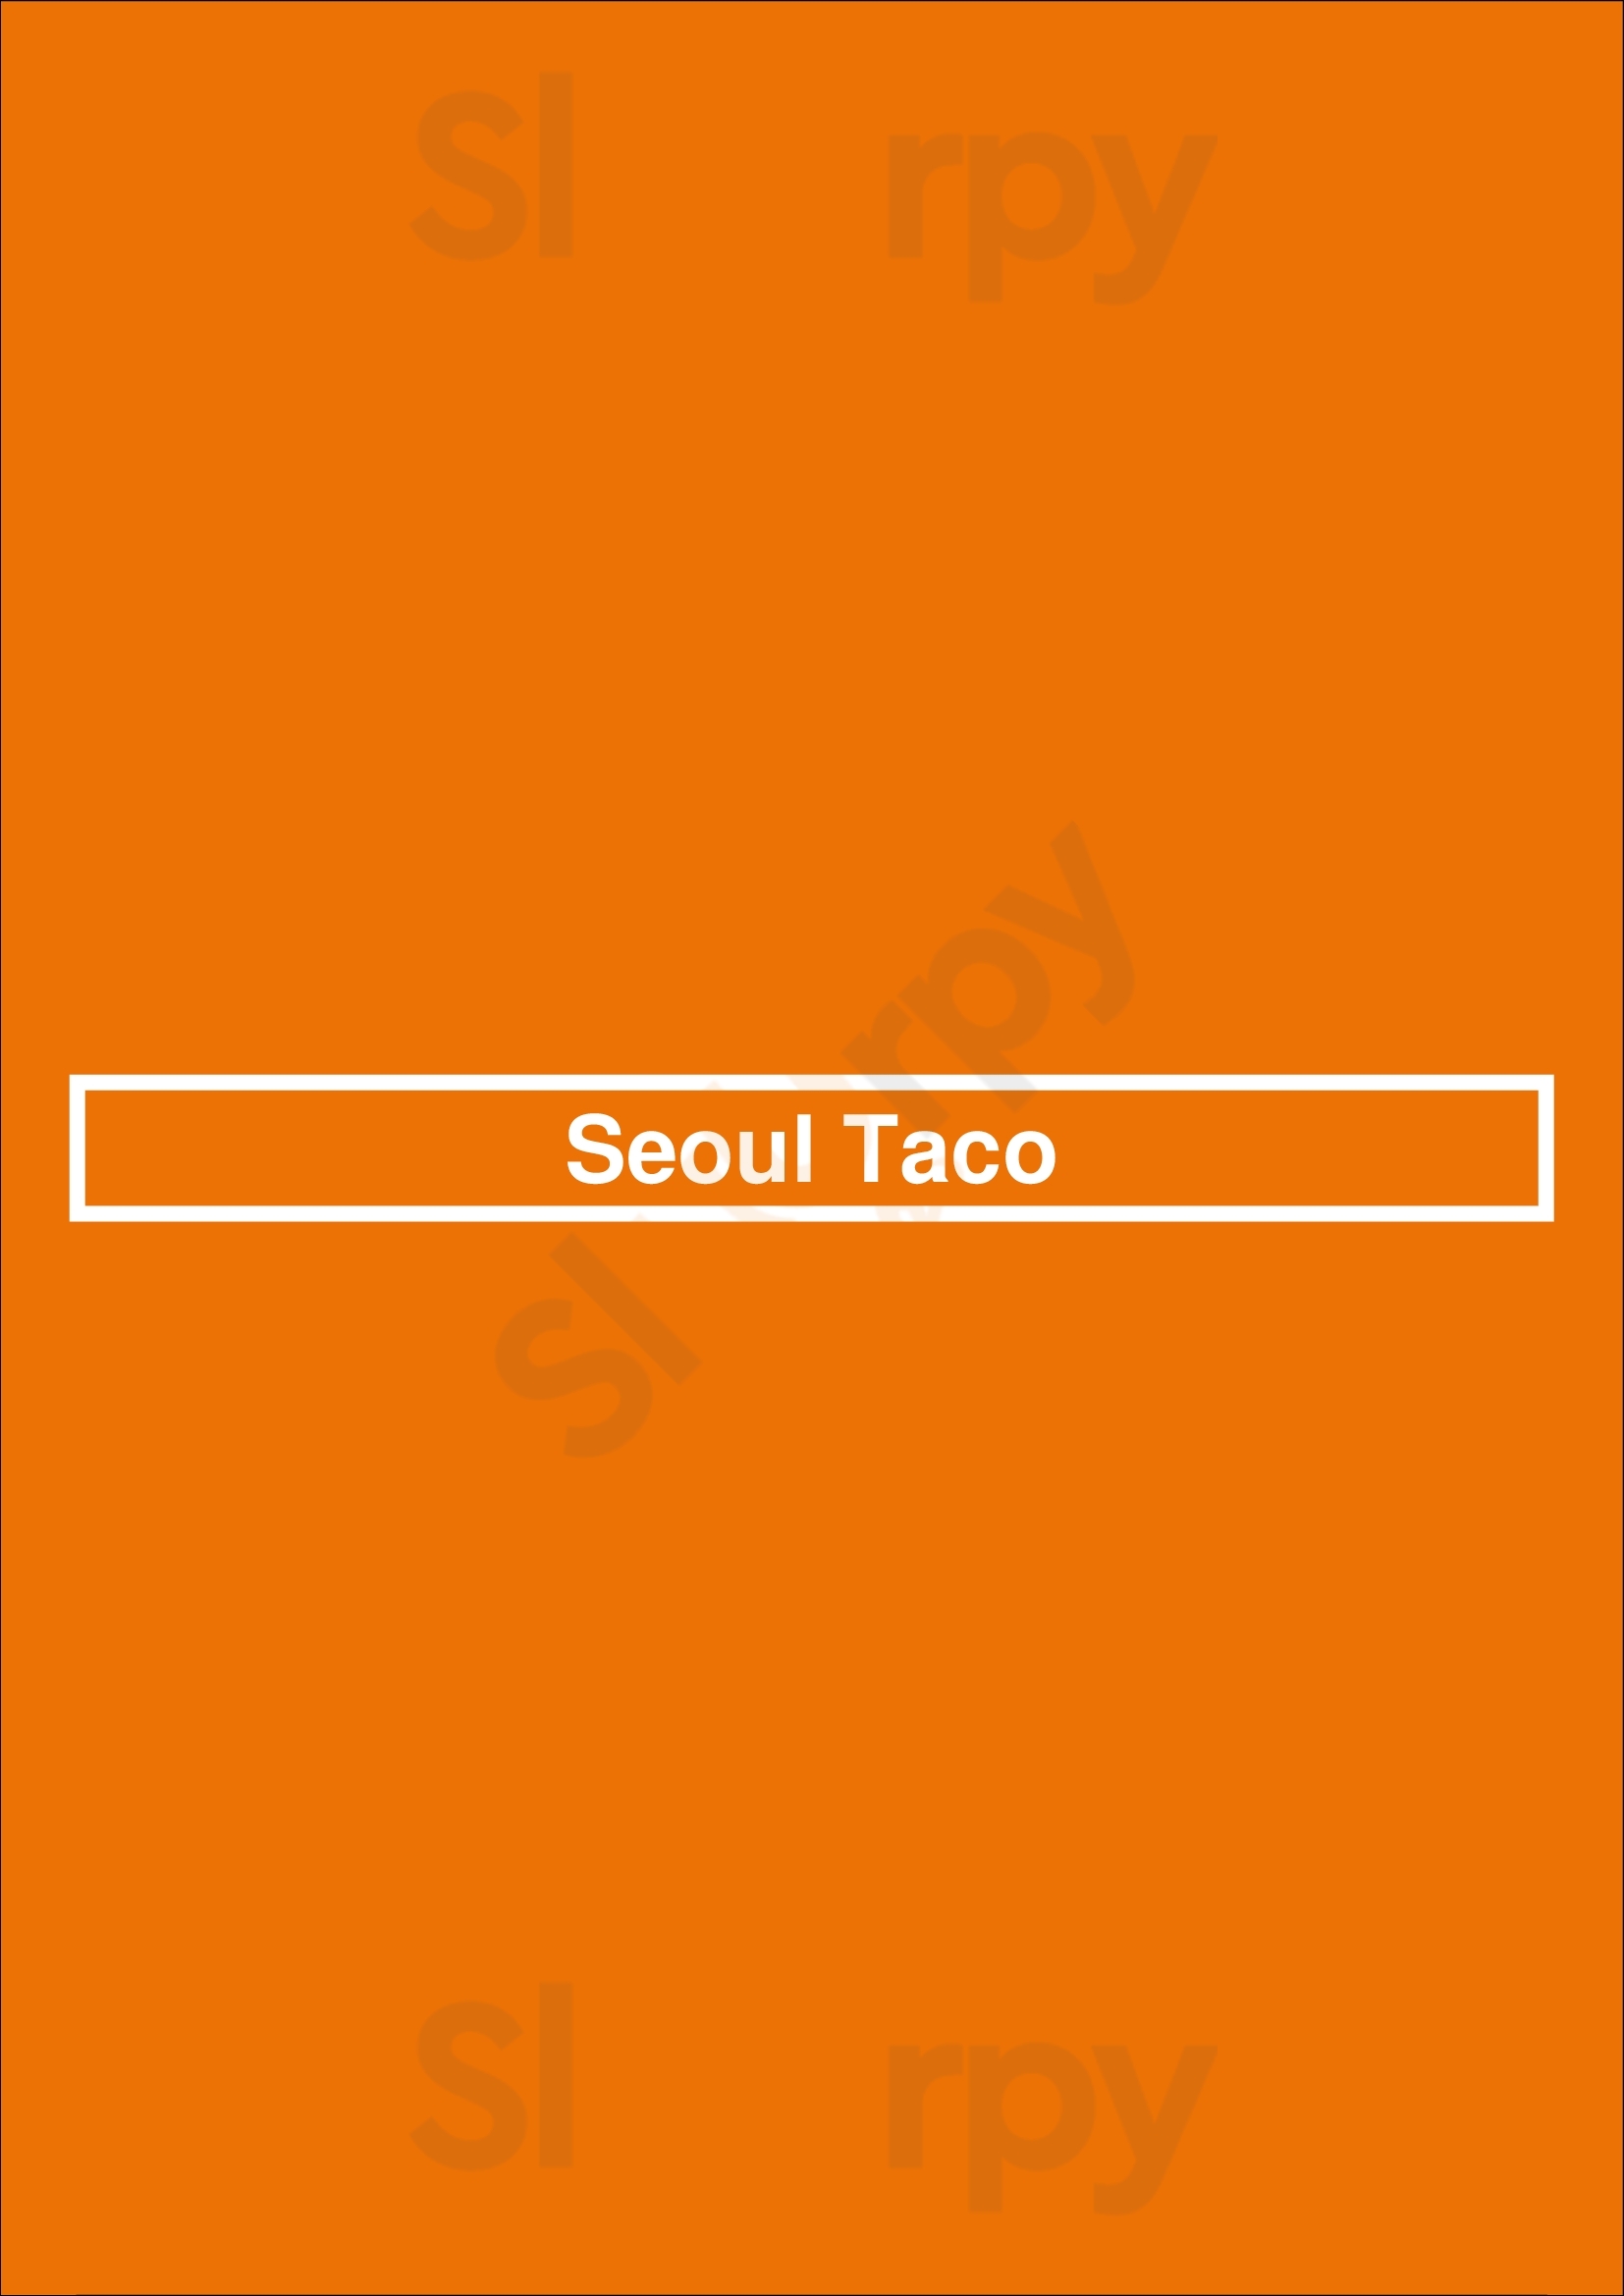 Seoul Taco Chesterfield Menu - 1